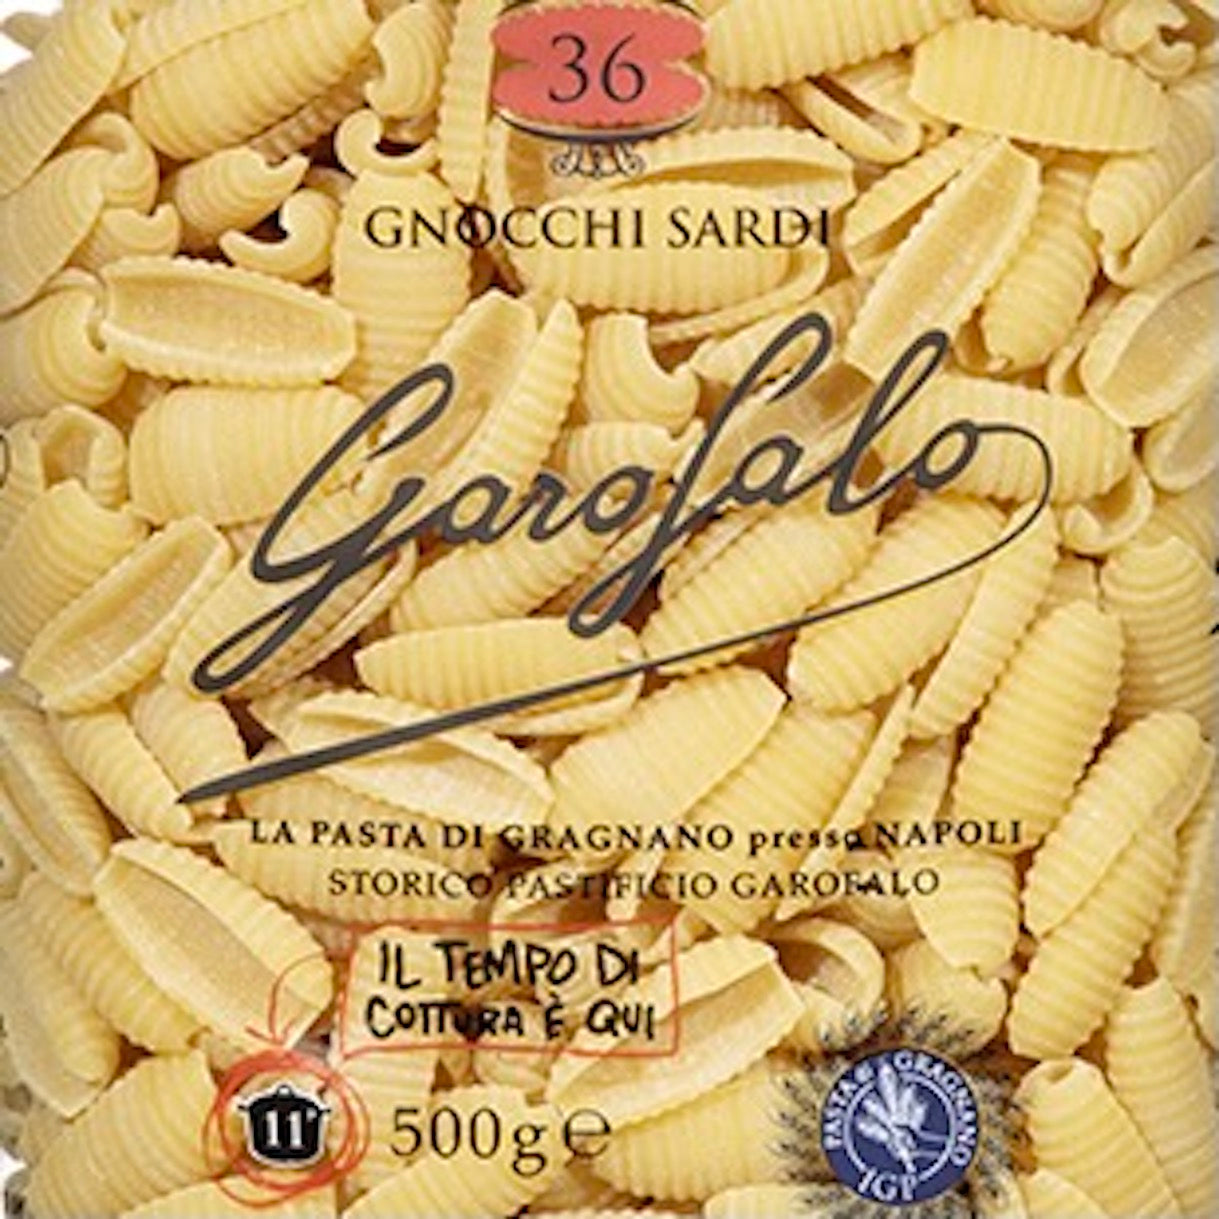 Gnocchi Sardi | Garofalo | 500g